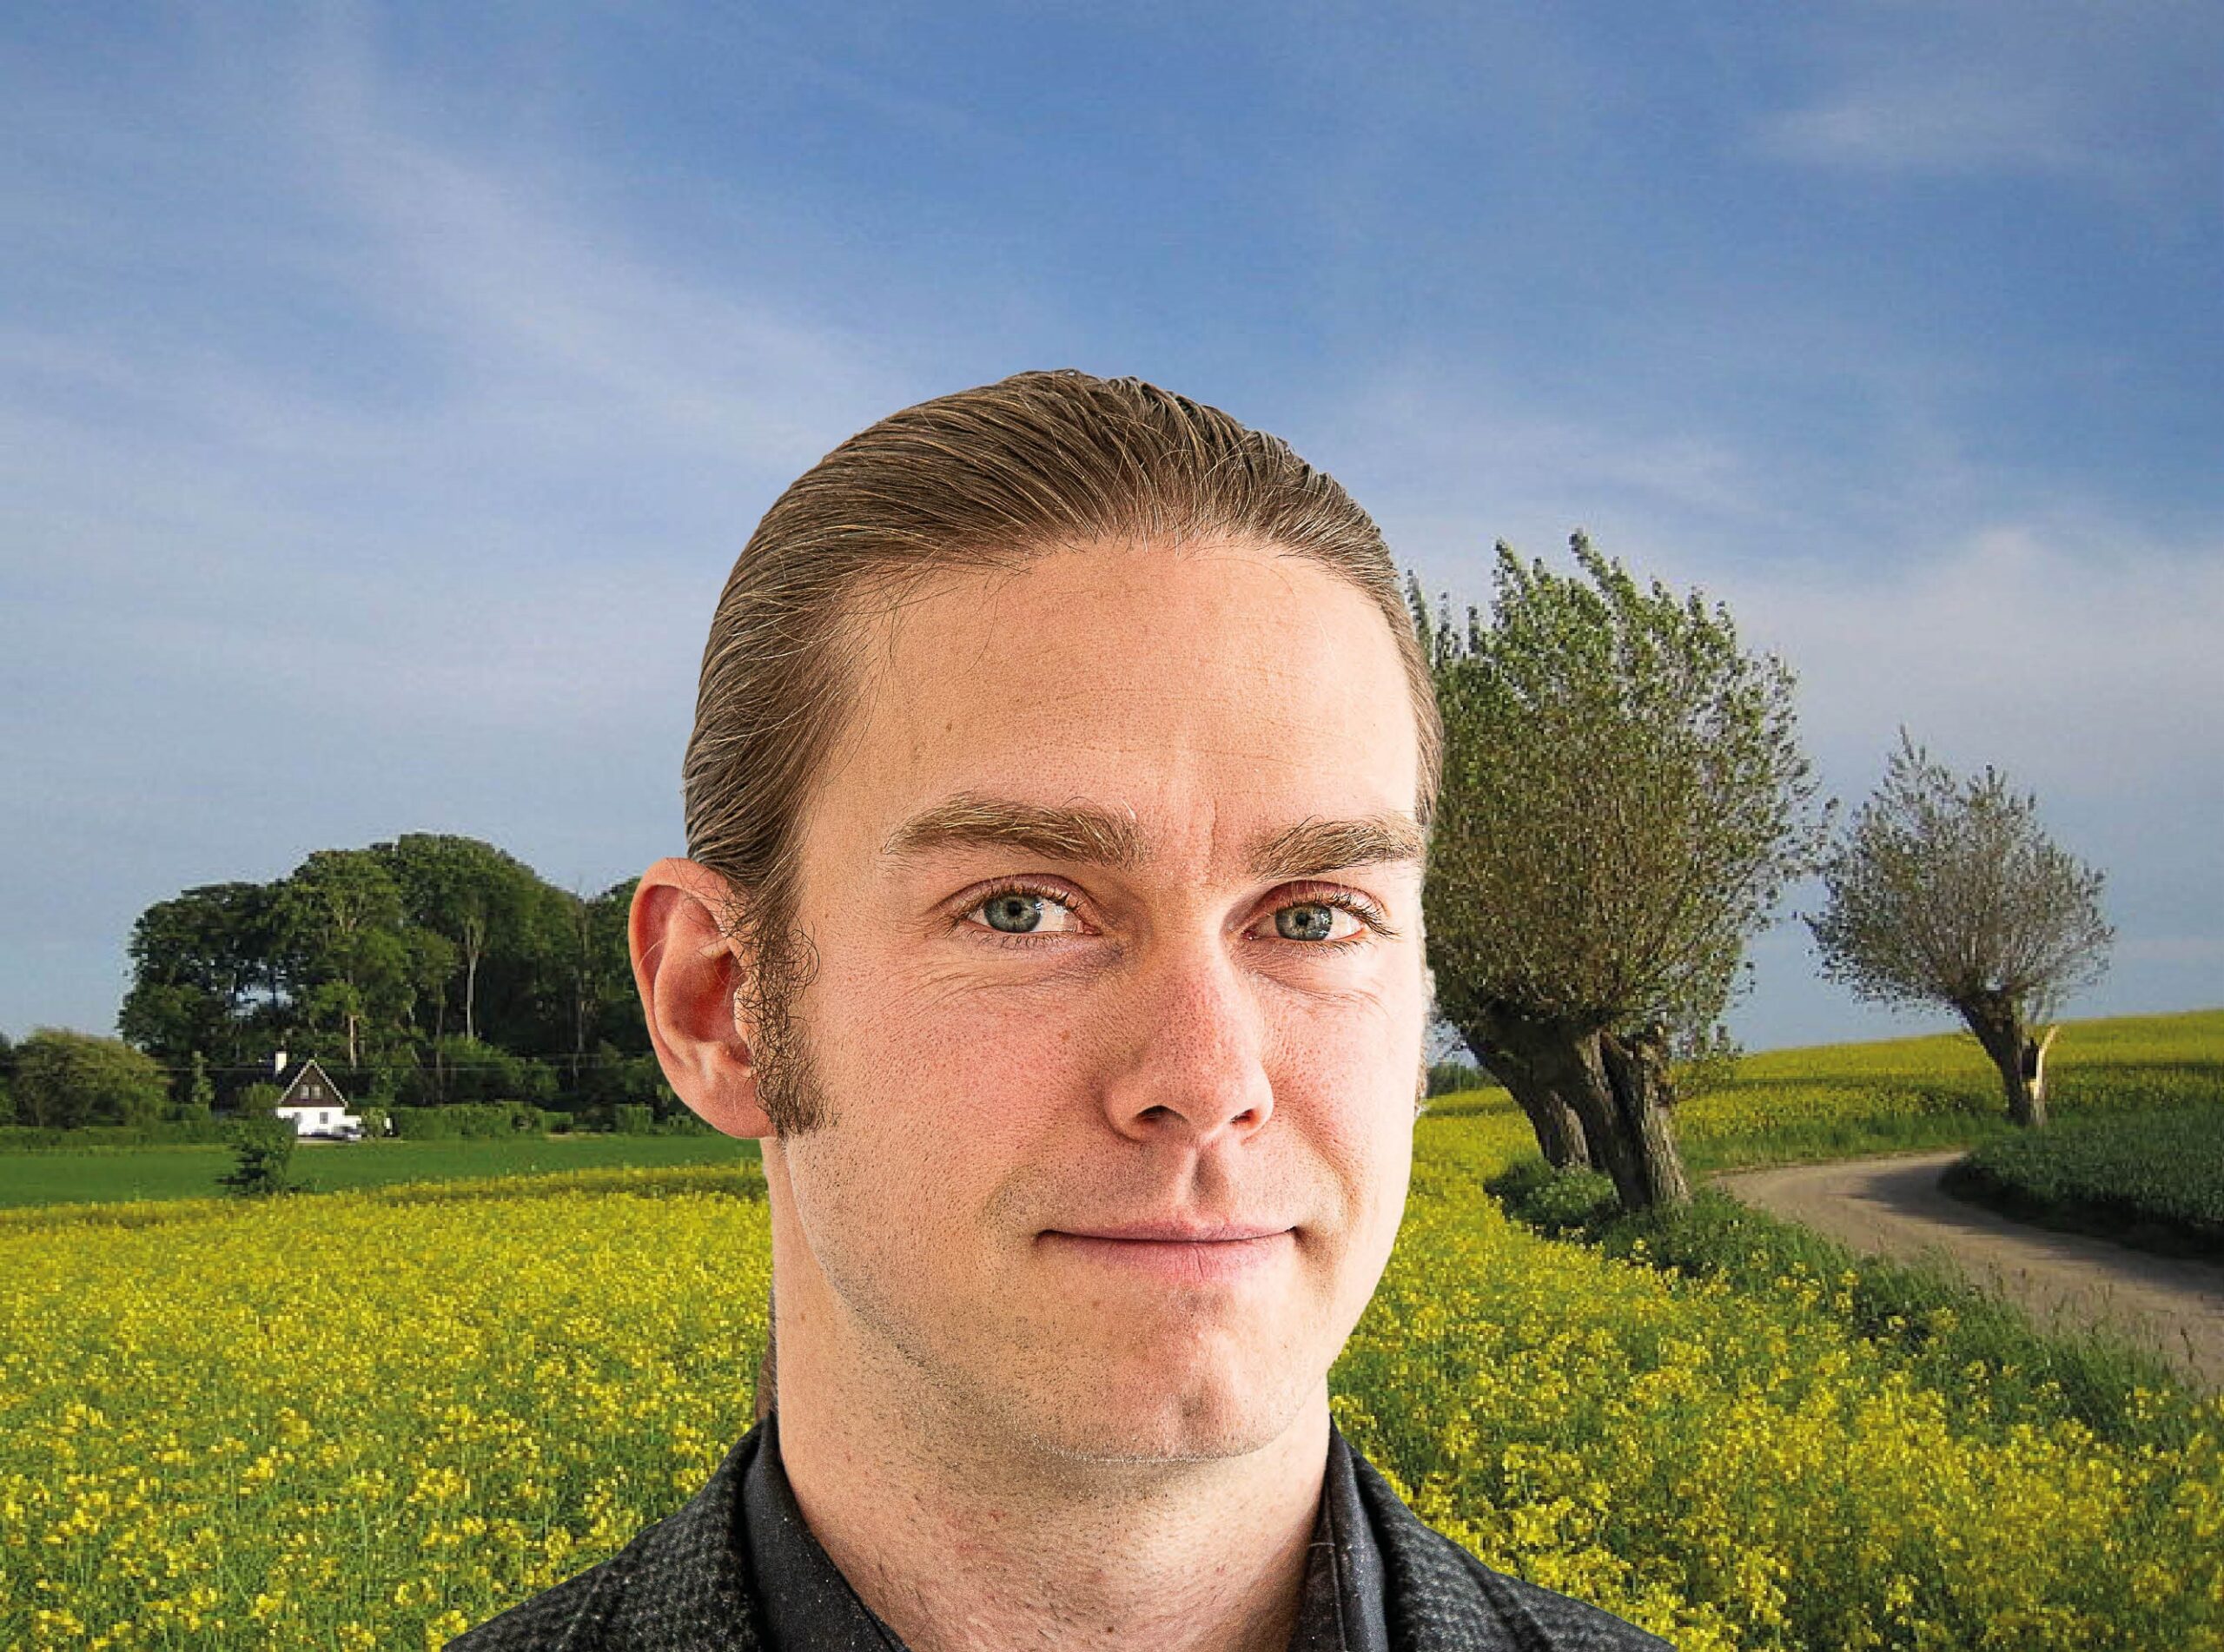 Mathias ansikte ses framför ett rapsfält med pilträd bredvid.